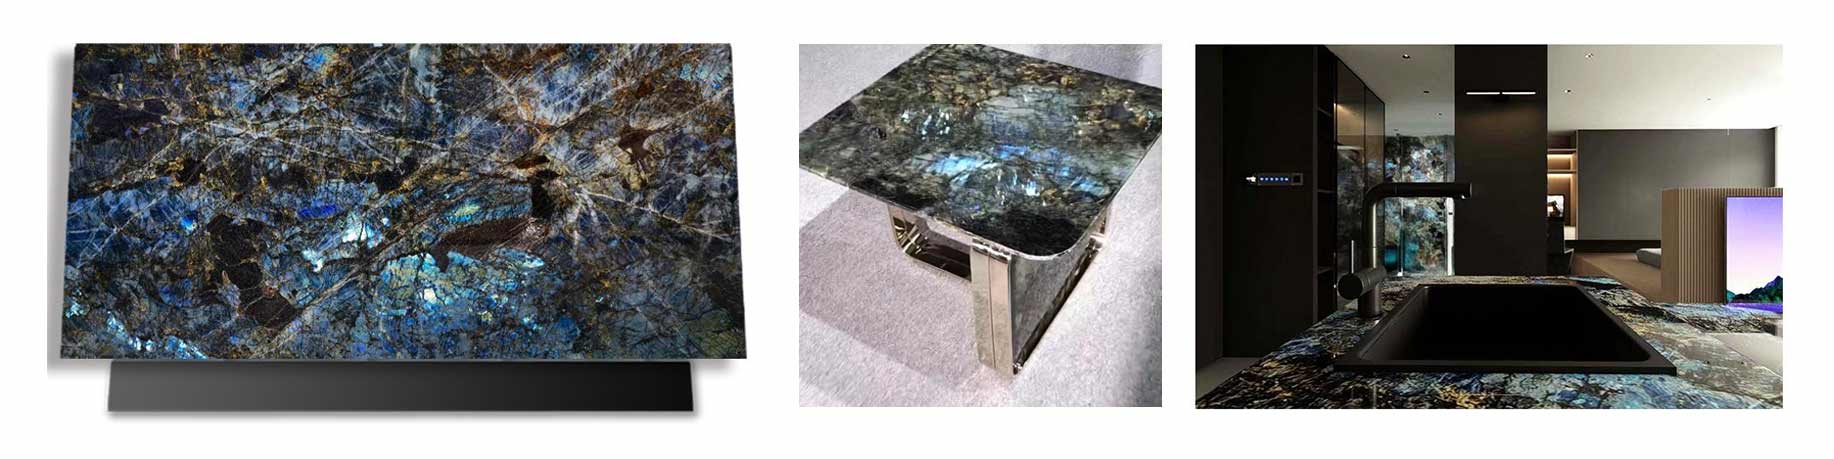 Blauer Labradorit-Granit